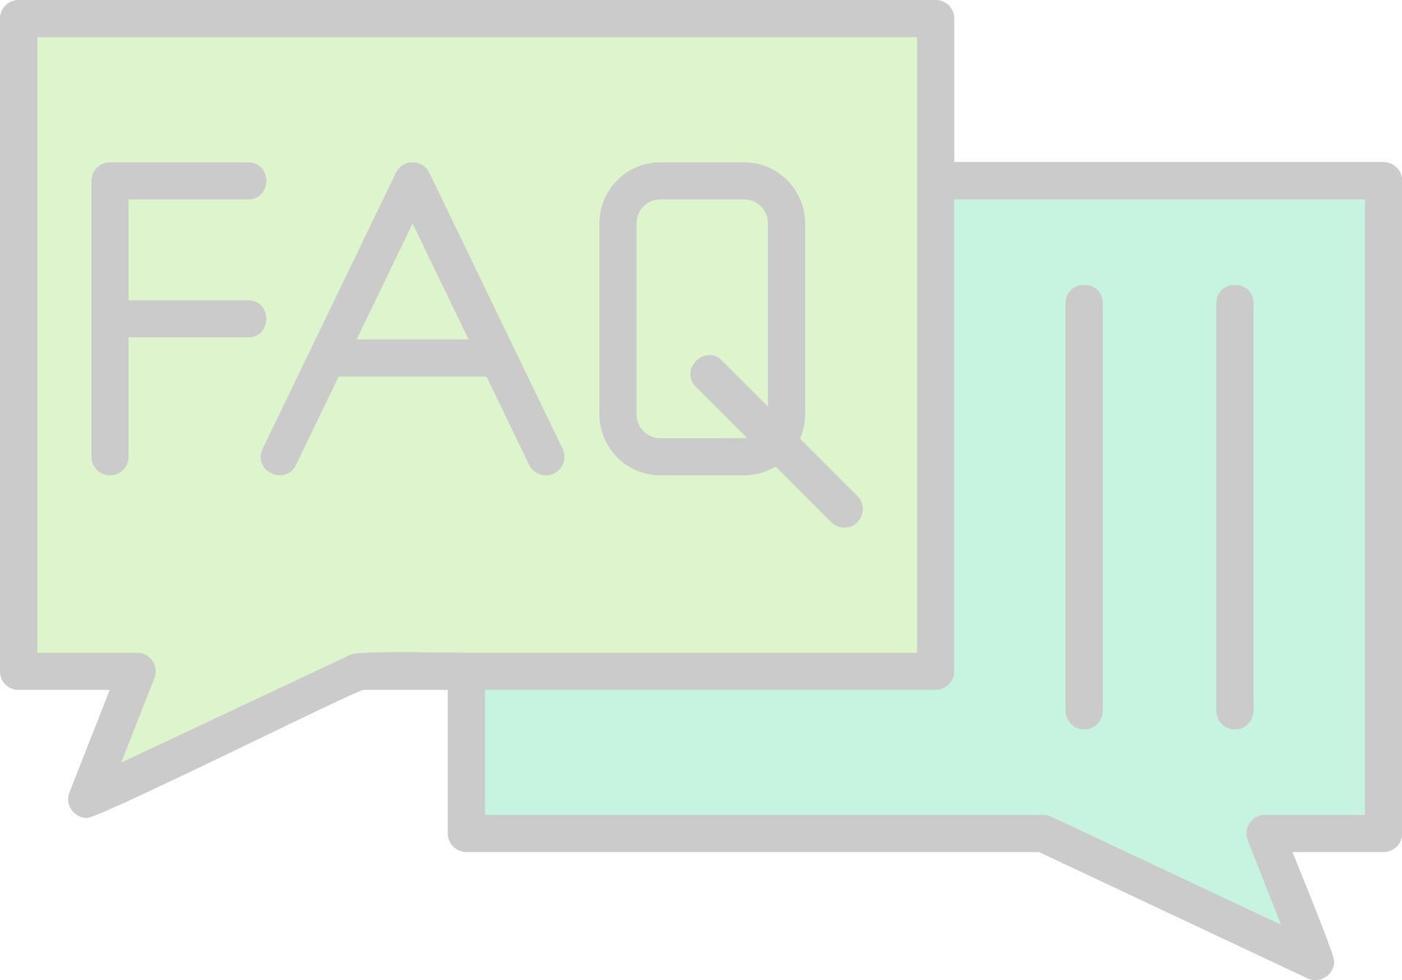 FAQ vector icoon ontwerp